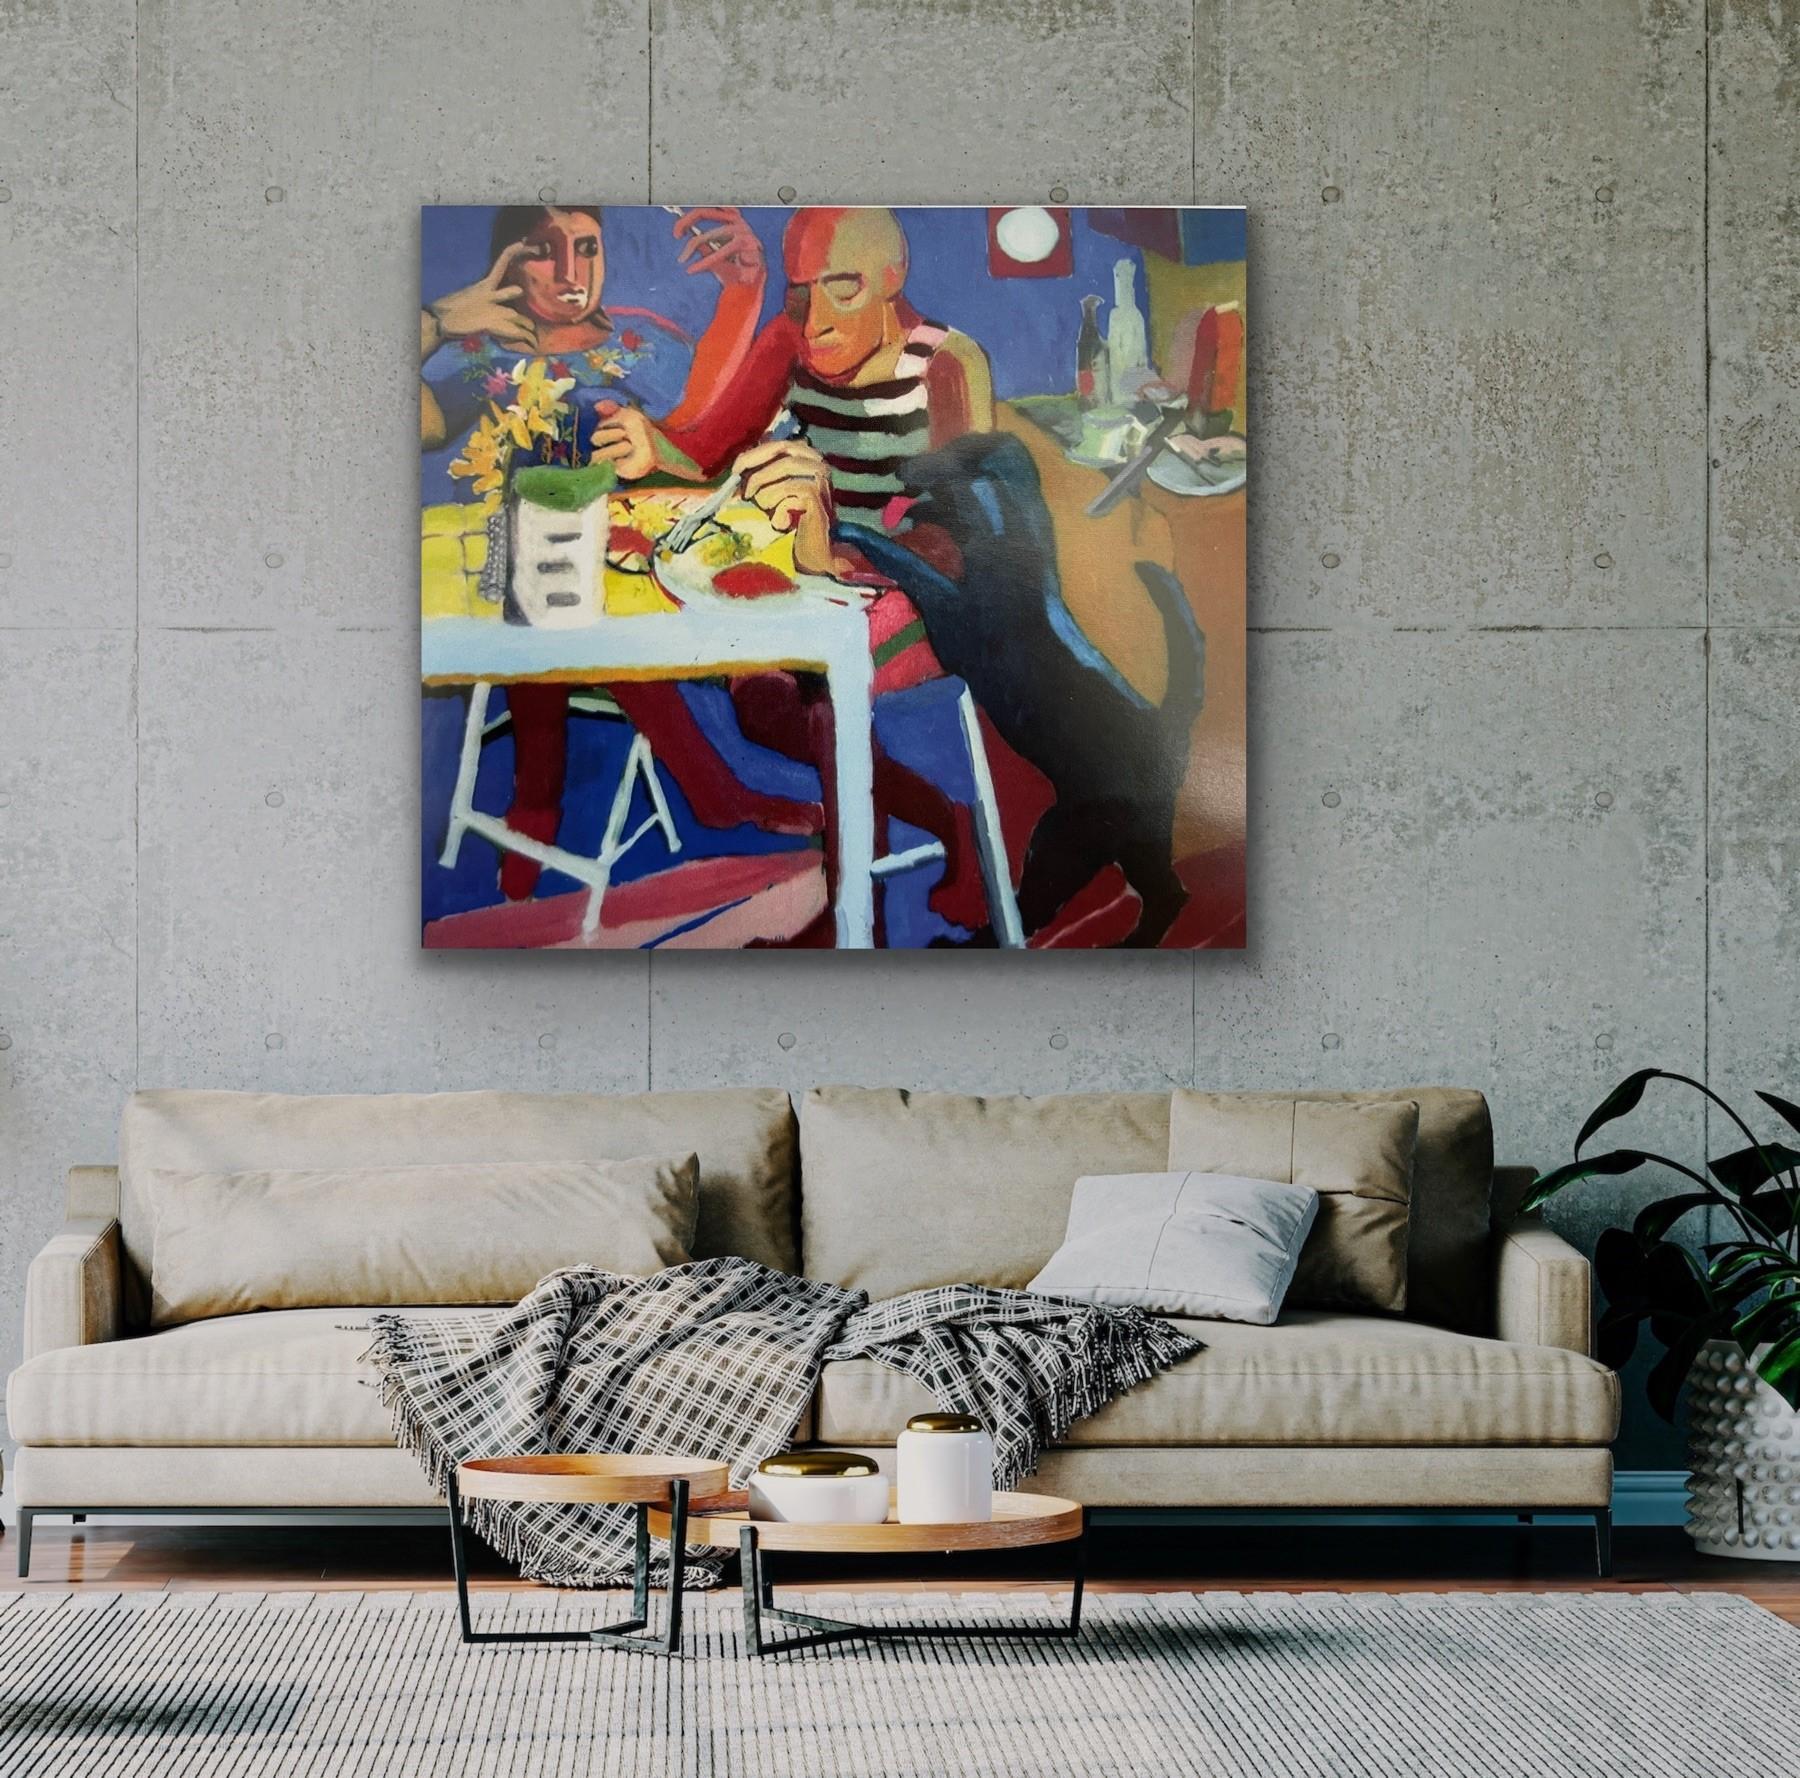 Abstract Painting Erin Haldrup - Magaiver, 60 x 66, œuvre figurative surréaliste excentrique rendant hommage à Picasso 